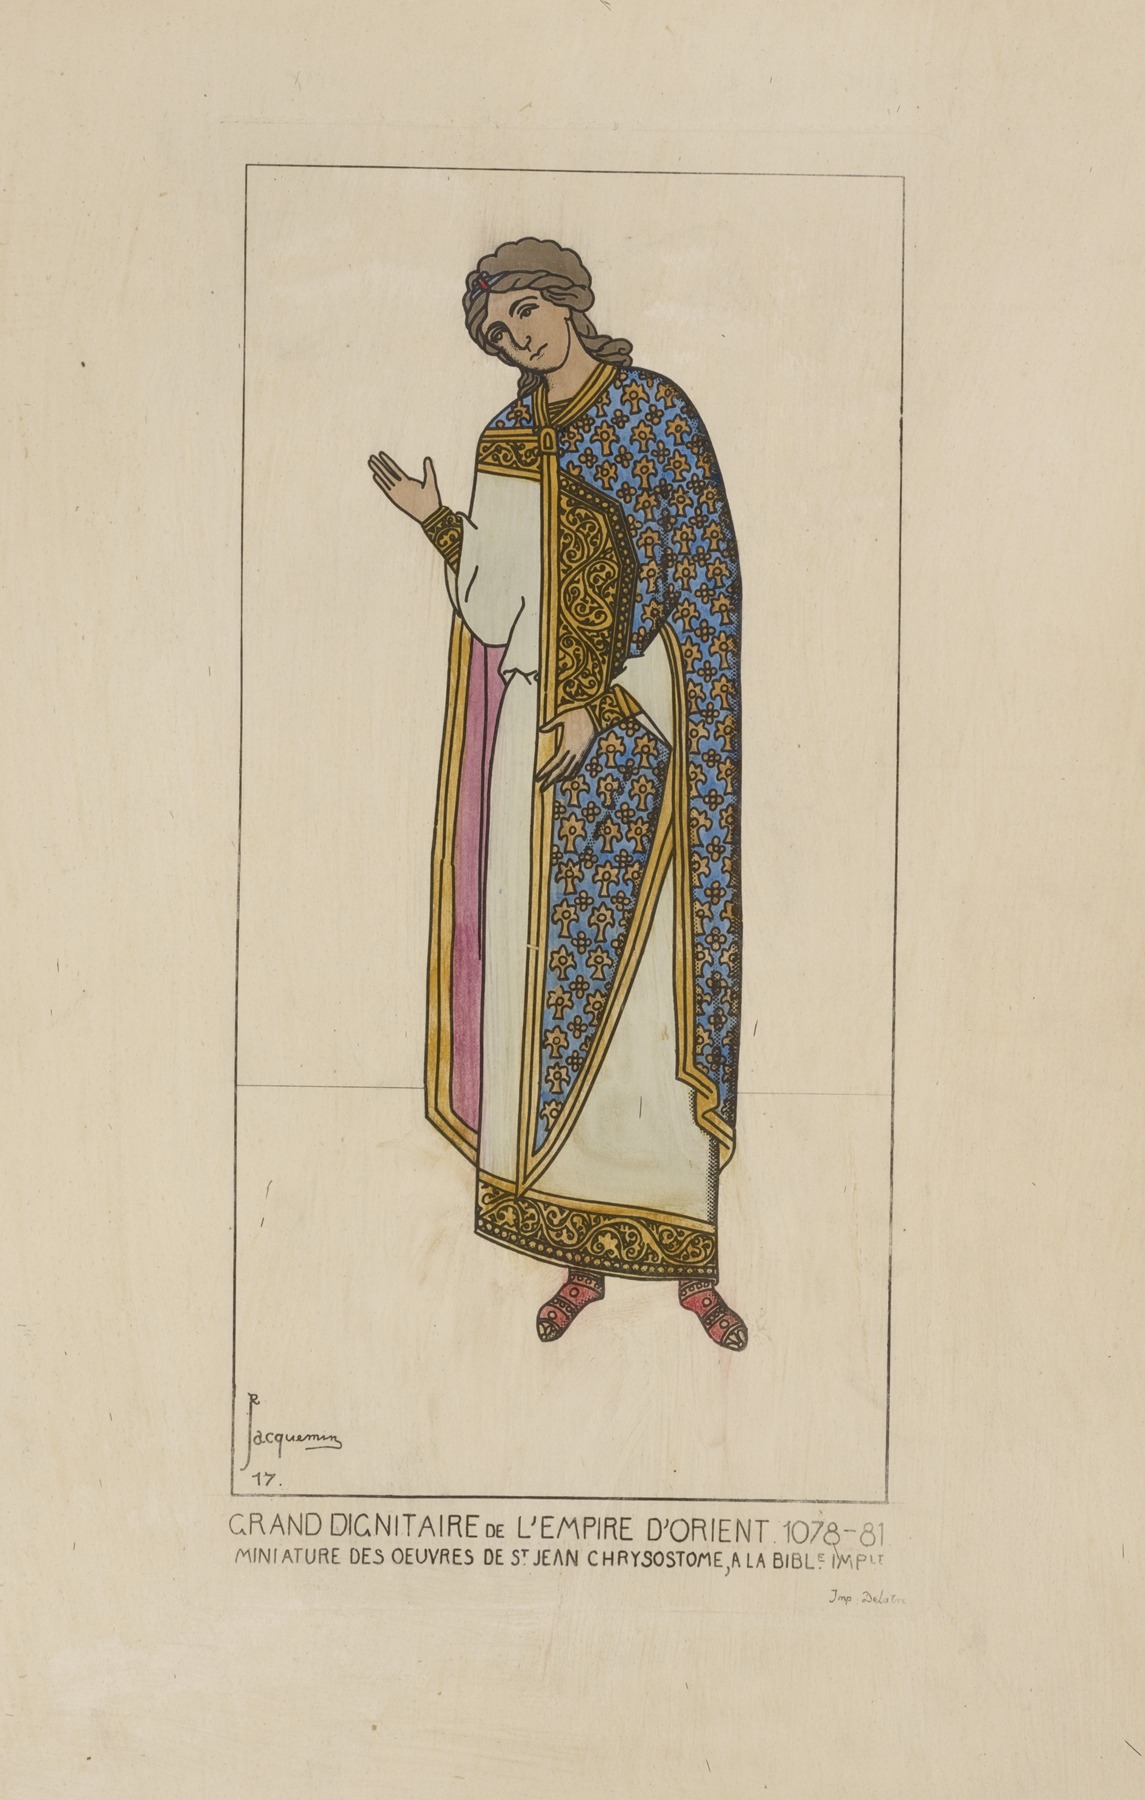 Raphaël Jacquemin - Grand dignitaire de l’Empire d’Orient 1078-81. Miniatures des ouvres de St. Jean Chrysostome, a la Bible Imp[eriale]